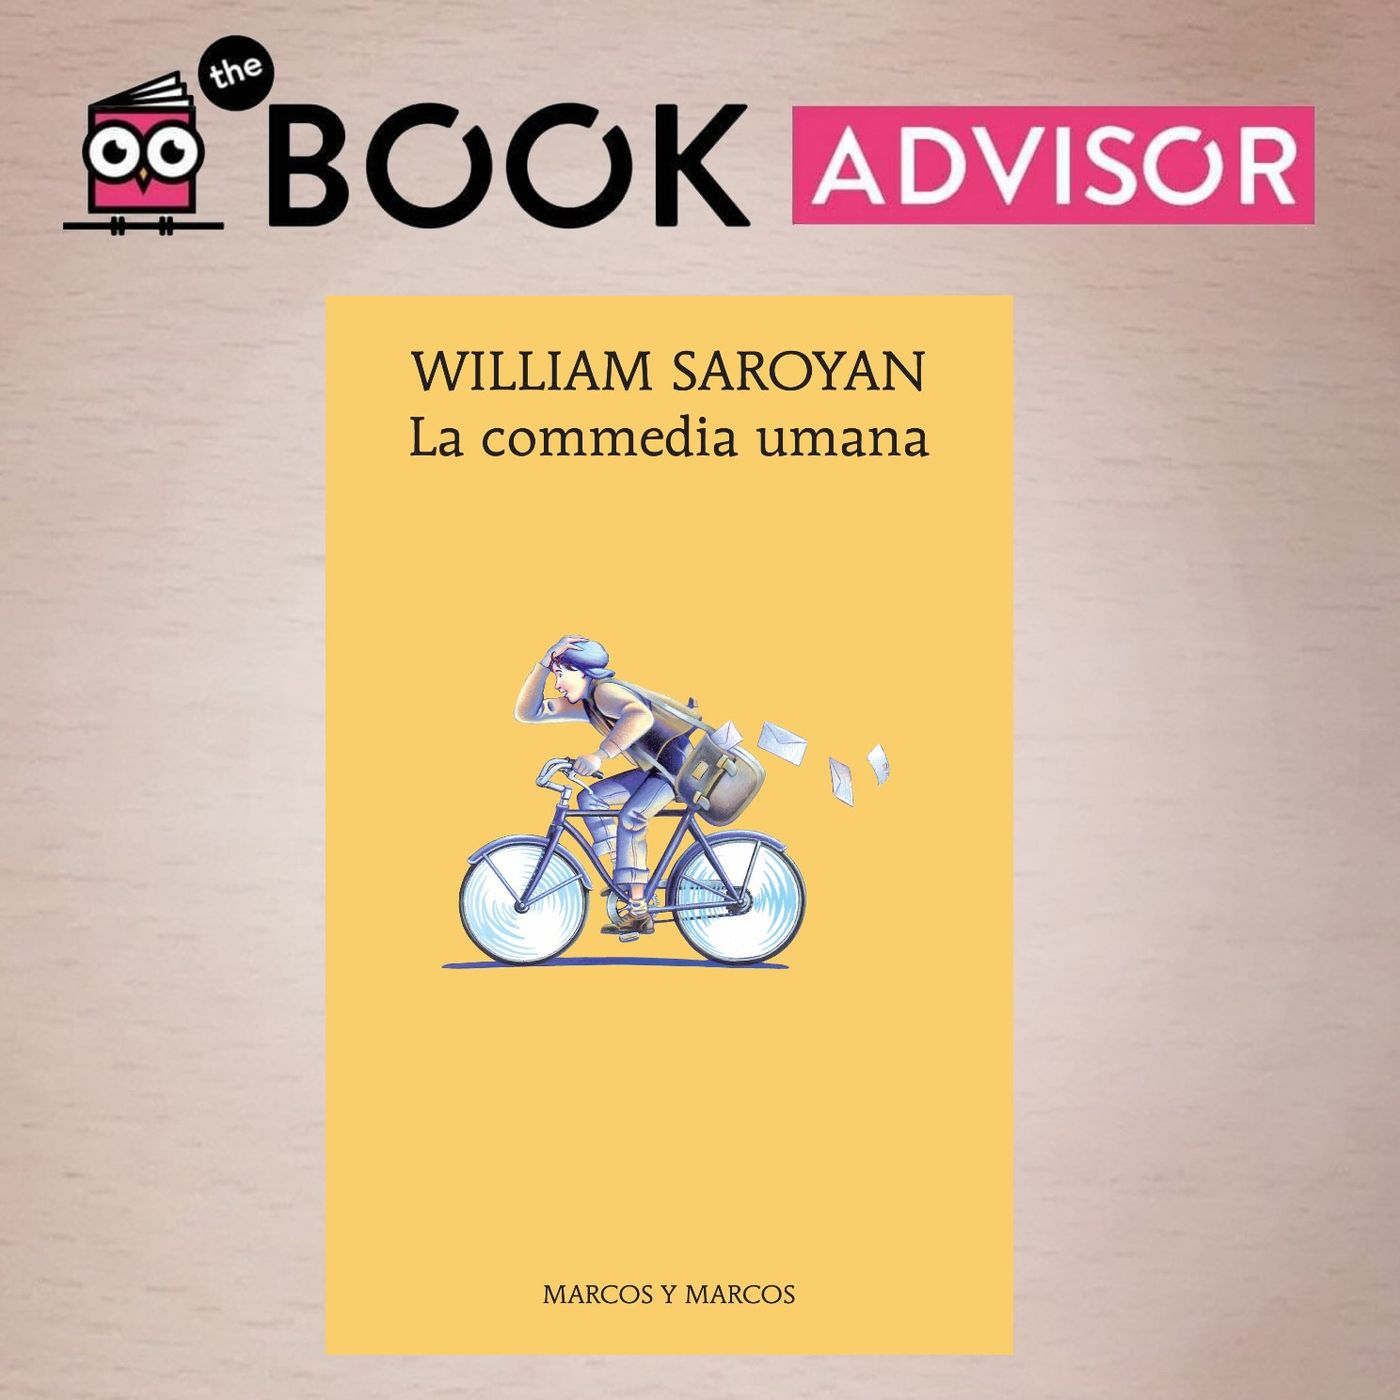 "La commedia umana" di WIlliam Saroyan: una parabola sull'adolescenza nell'America anni '40